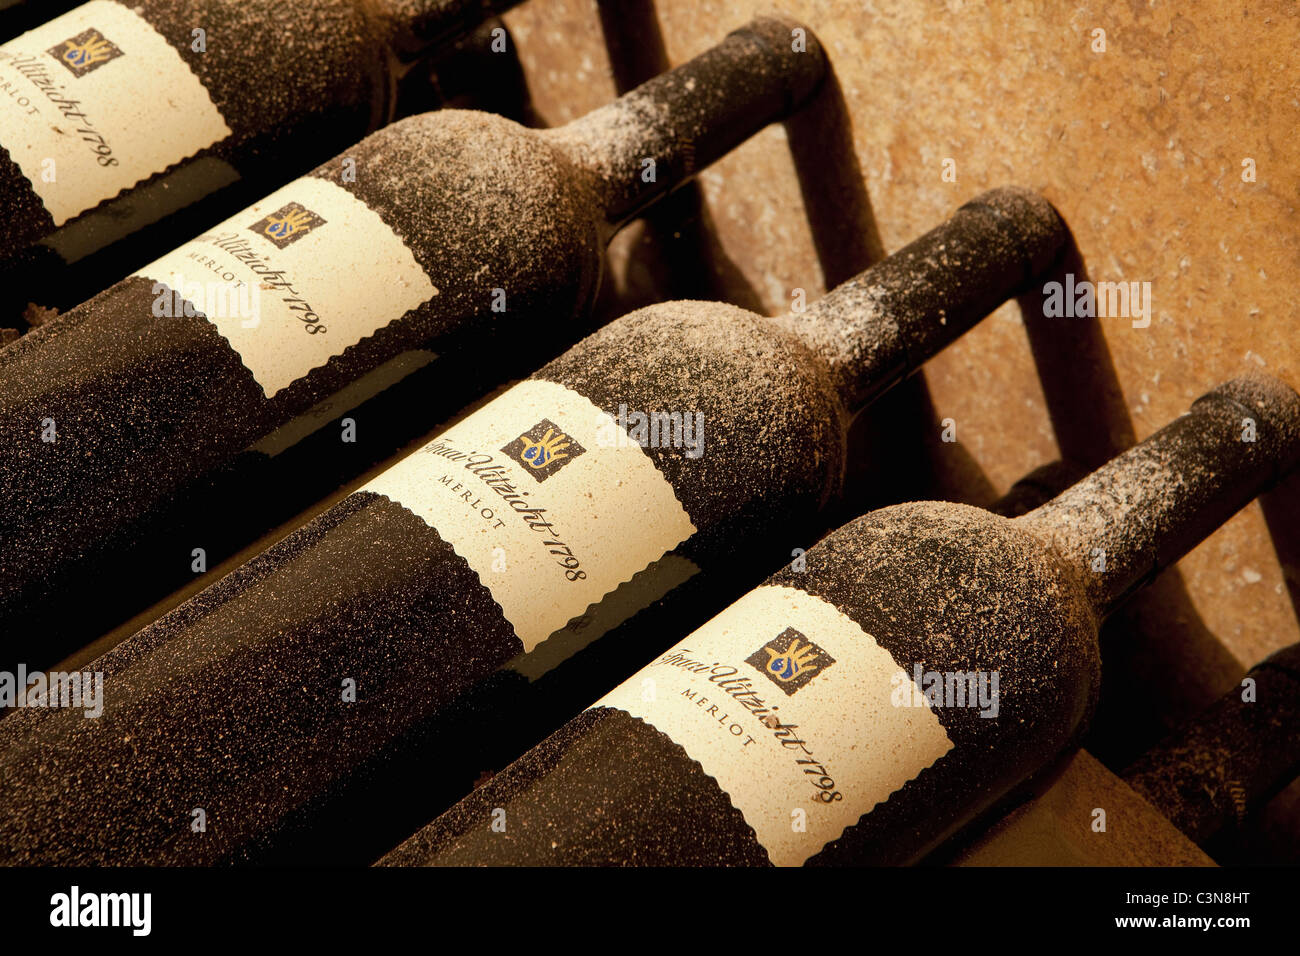 Südafrika, Western Cape, Robertson Wine Valley. Pension, Restaurant und Weinkeller Fraai Uitzicht. Flaschen Wein. Stockfoto